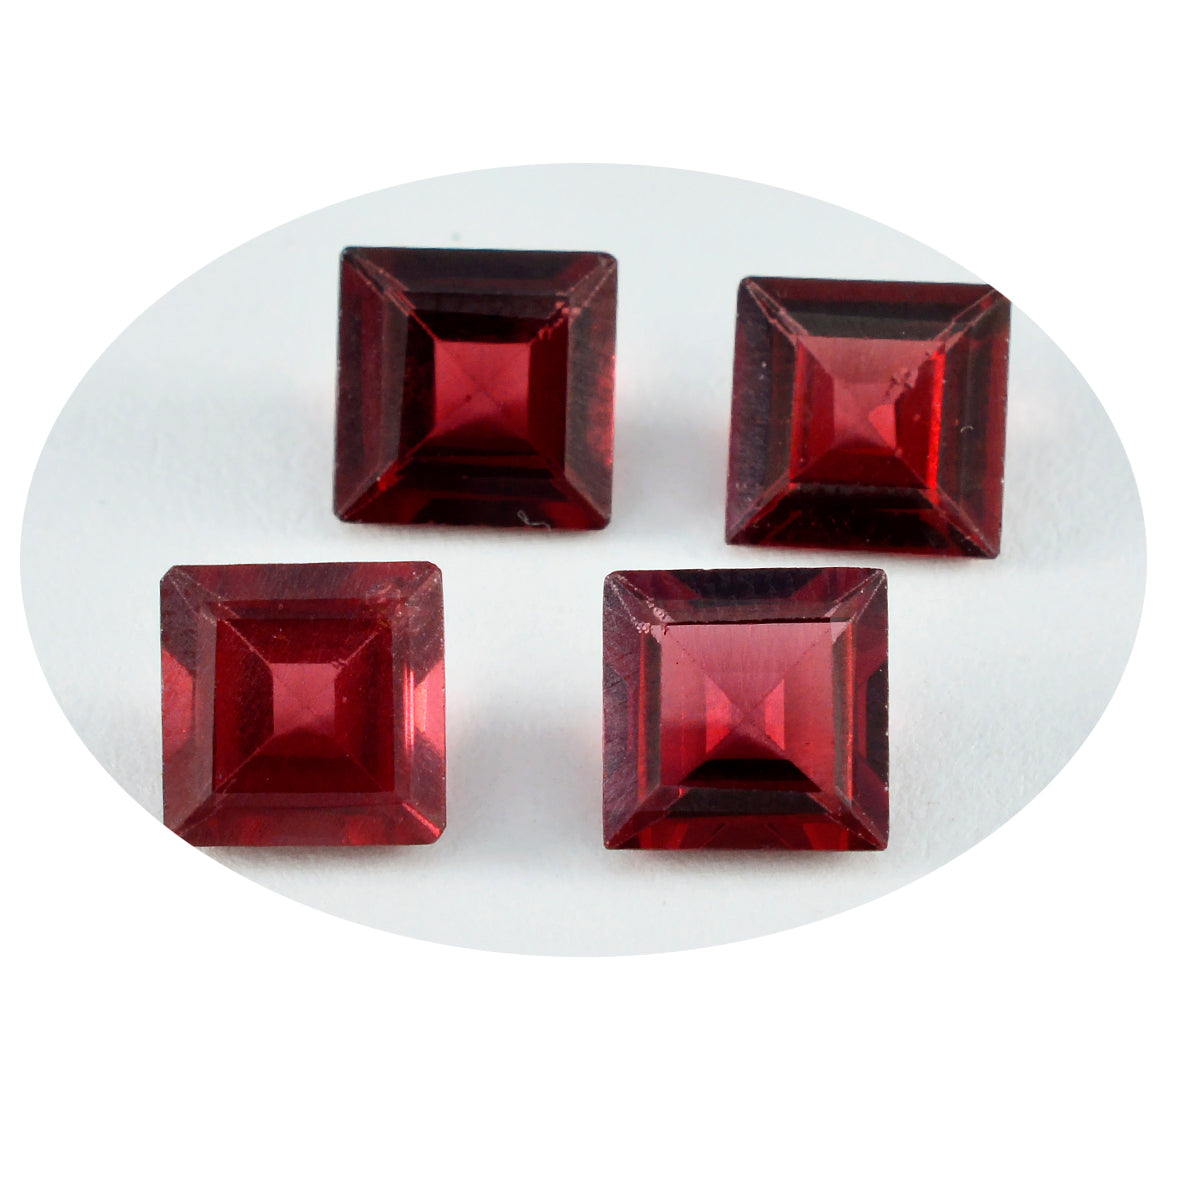 Riyogems 1PC echte rode granaat gefacetteerde 8x8 mm vierkante vorm mooie kwaliteitsedelsteen